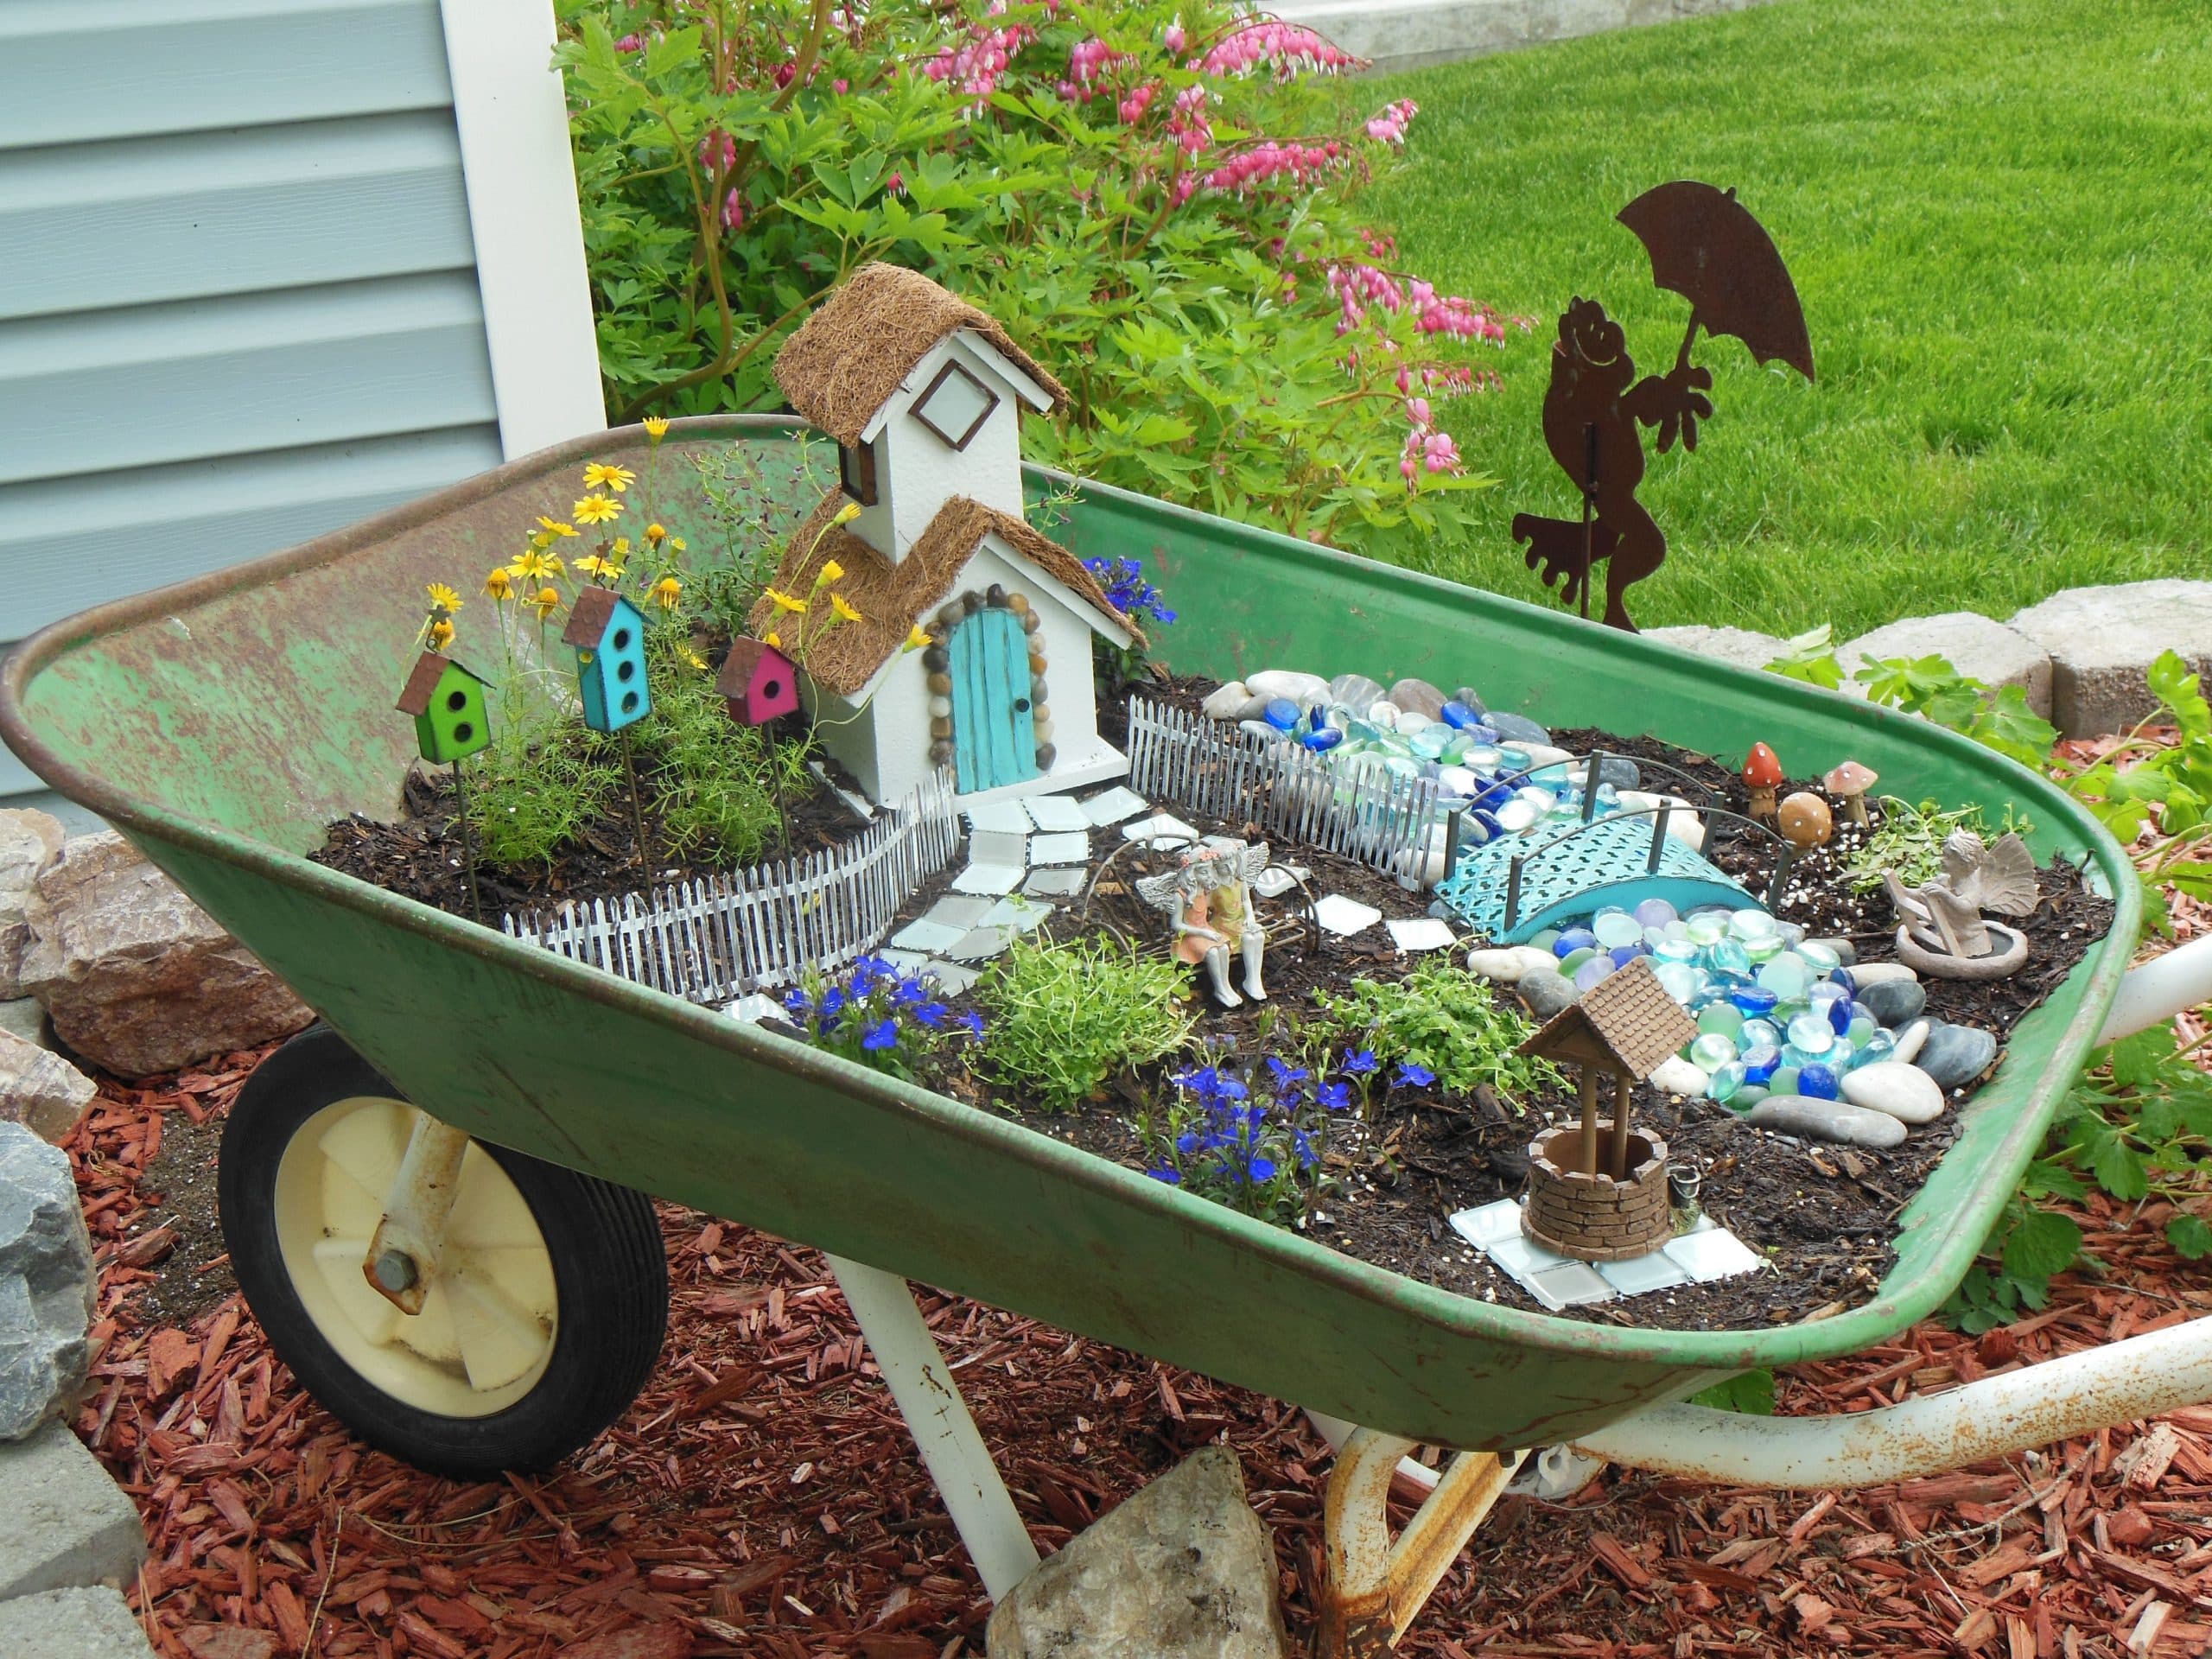 Fairy Garden In a Wheelbarrow